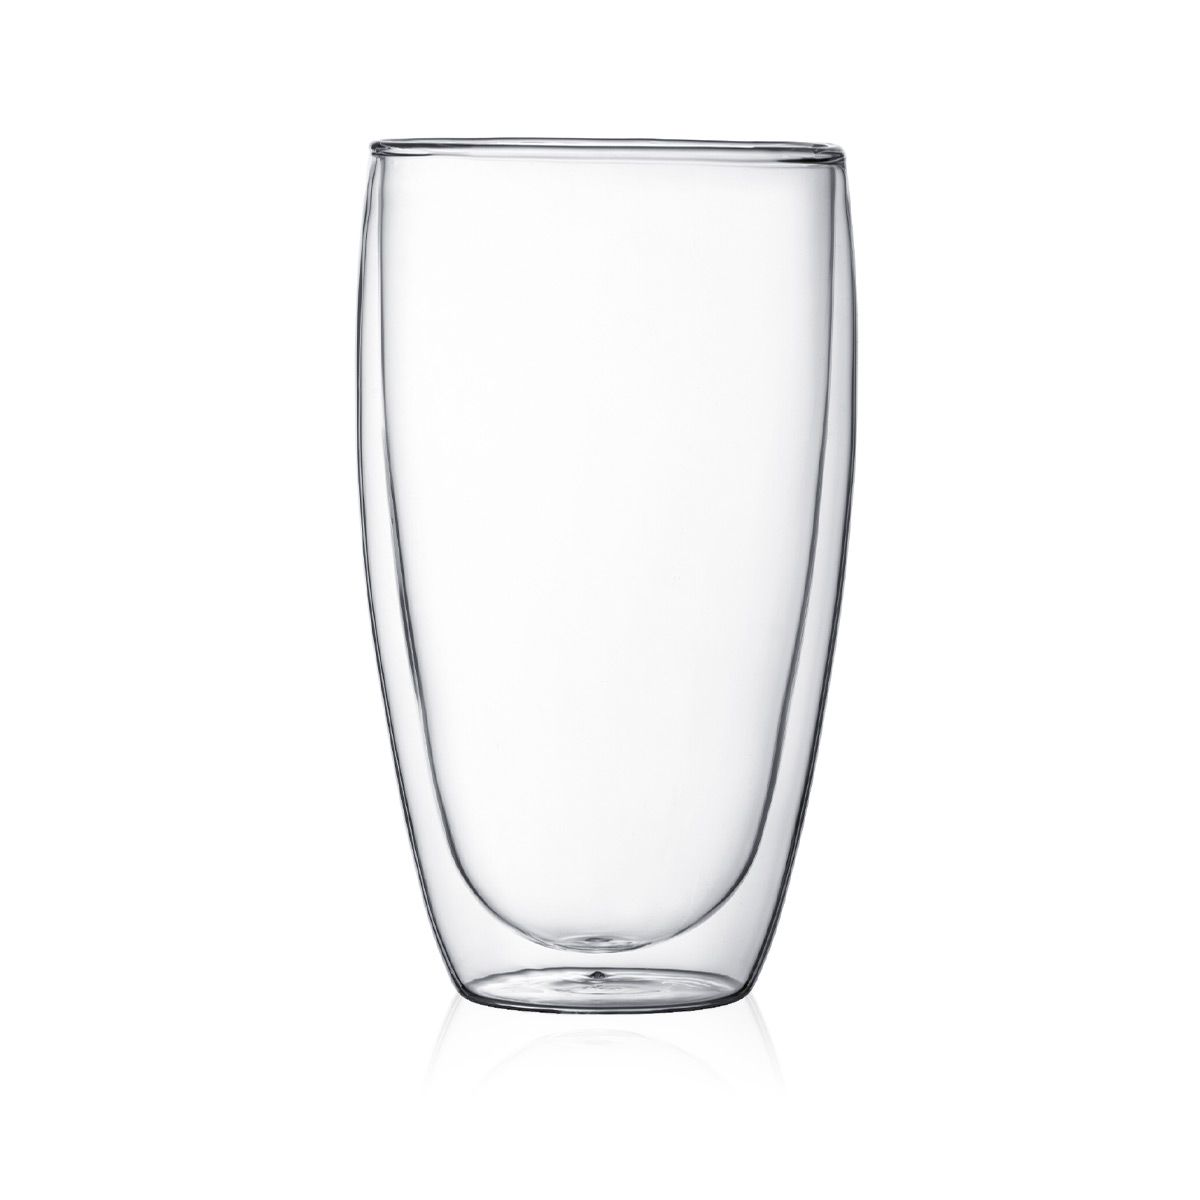 Latte macchiato glasses (450ml) - double-walled glasses 